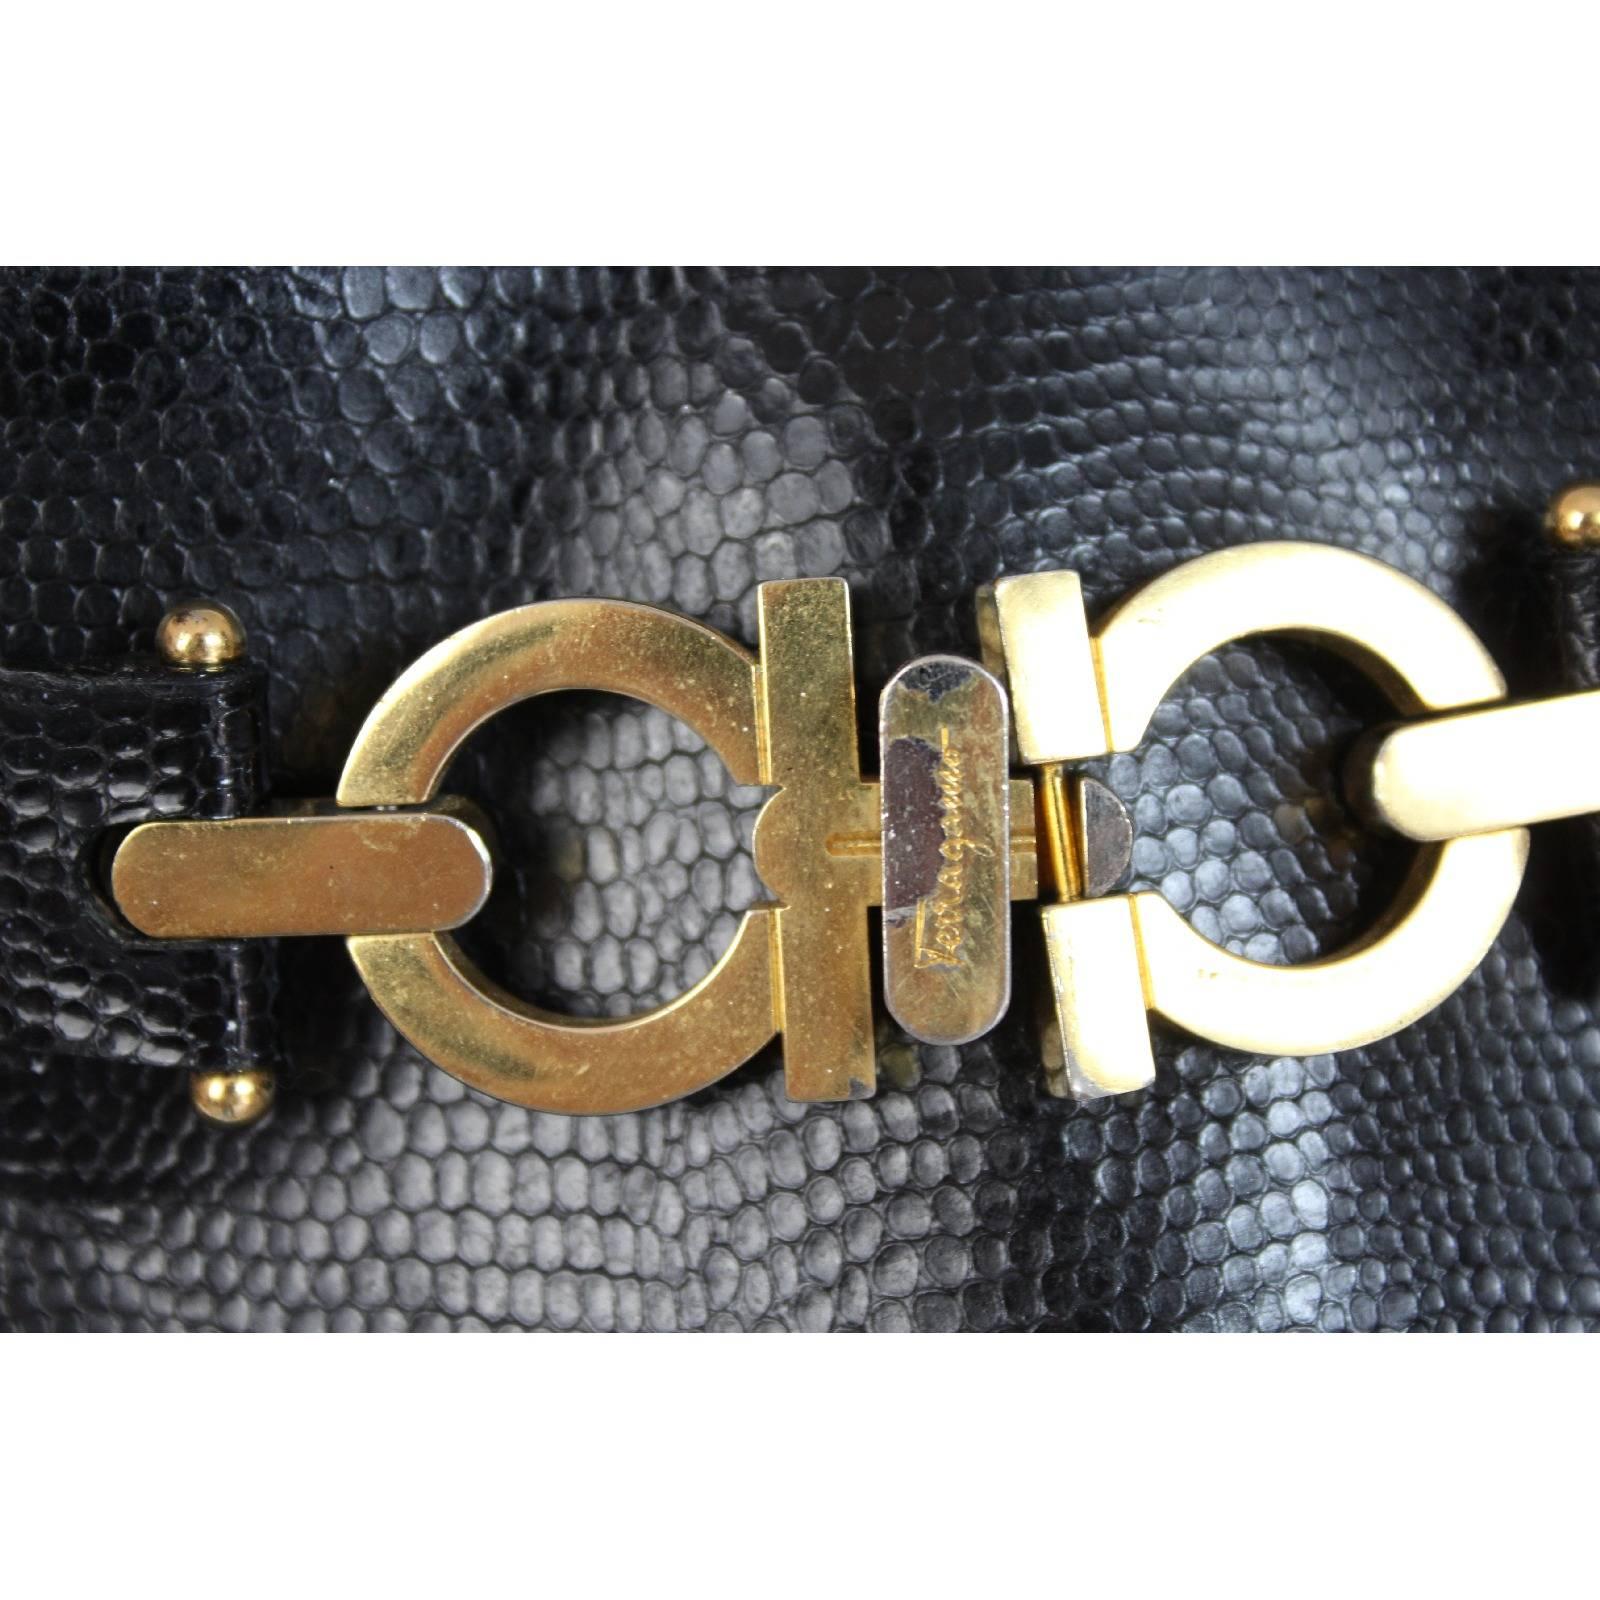 Salvatore Ferragamo Bucket Black Python Snake Skin Leather Italian Shoulder Bag For Sale 1